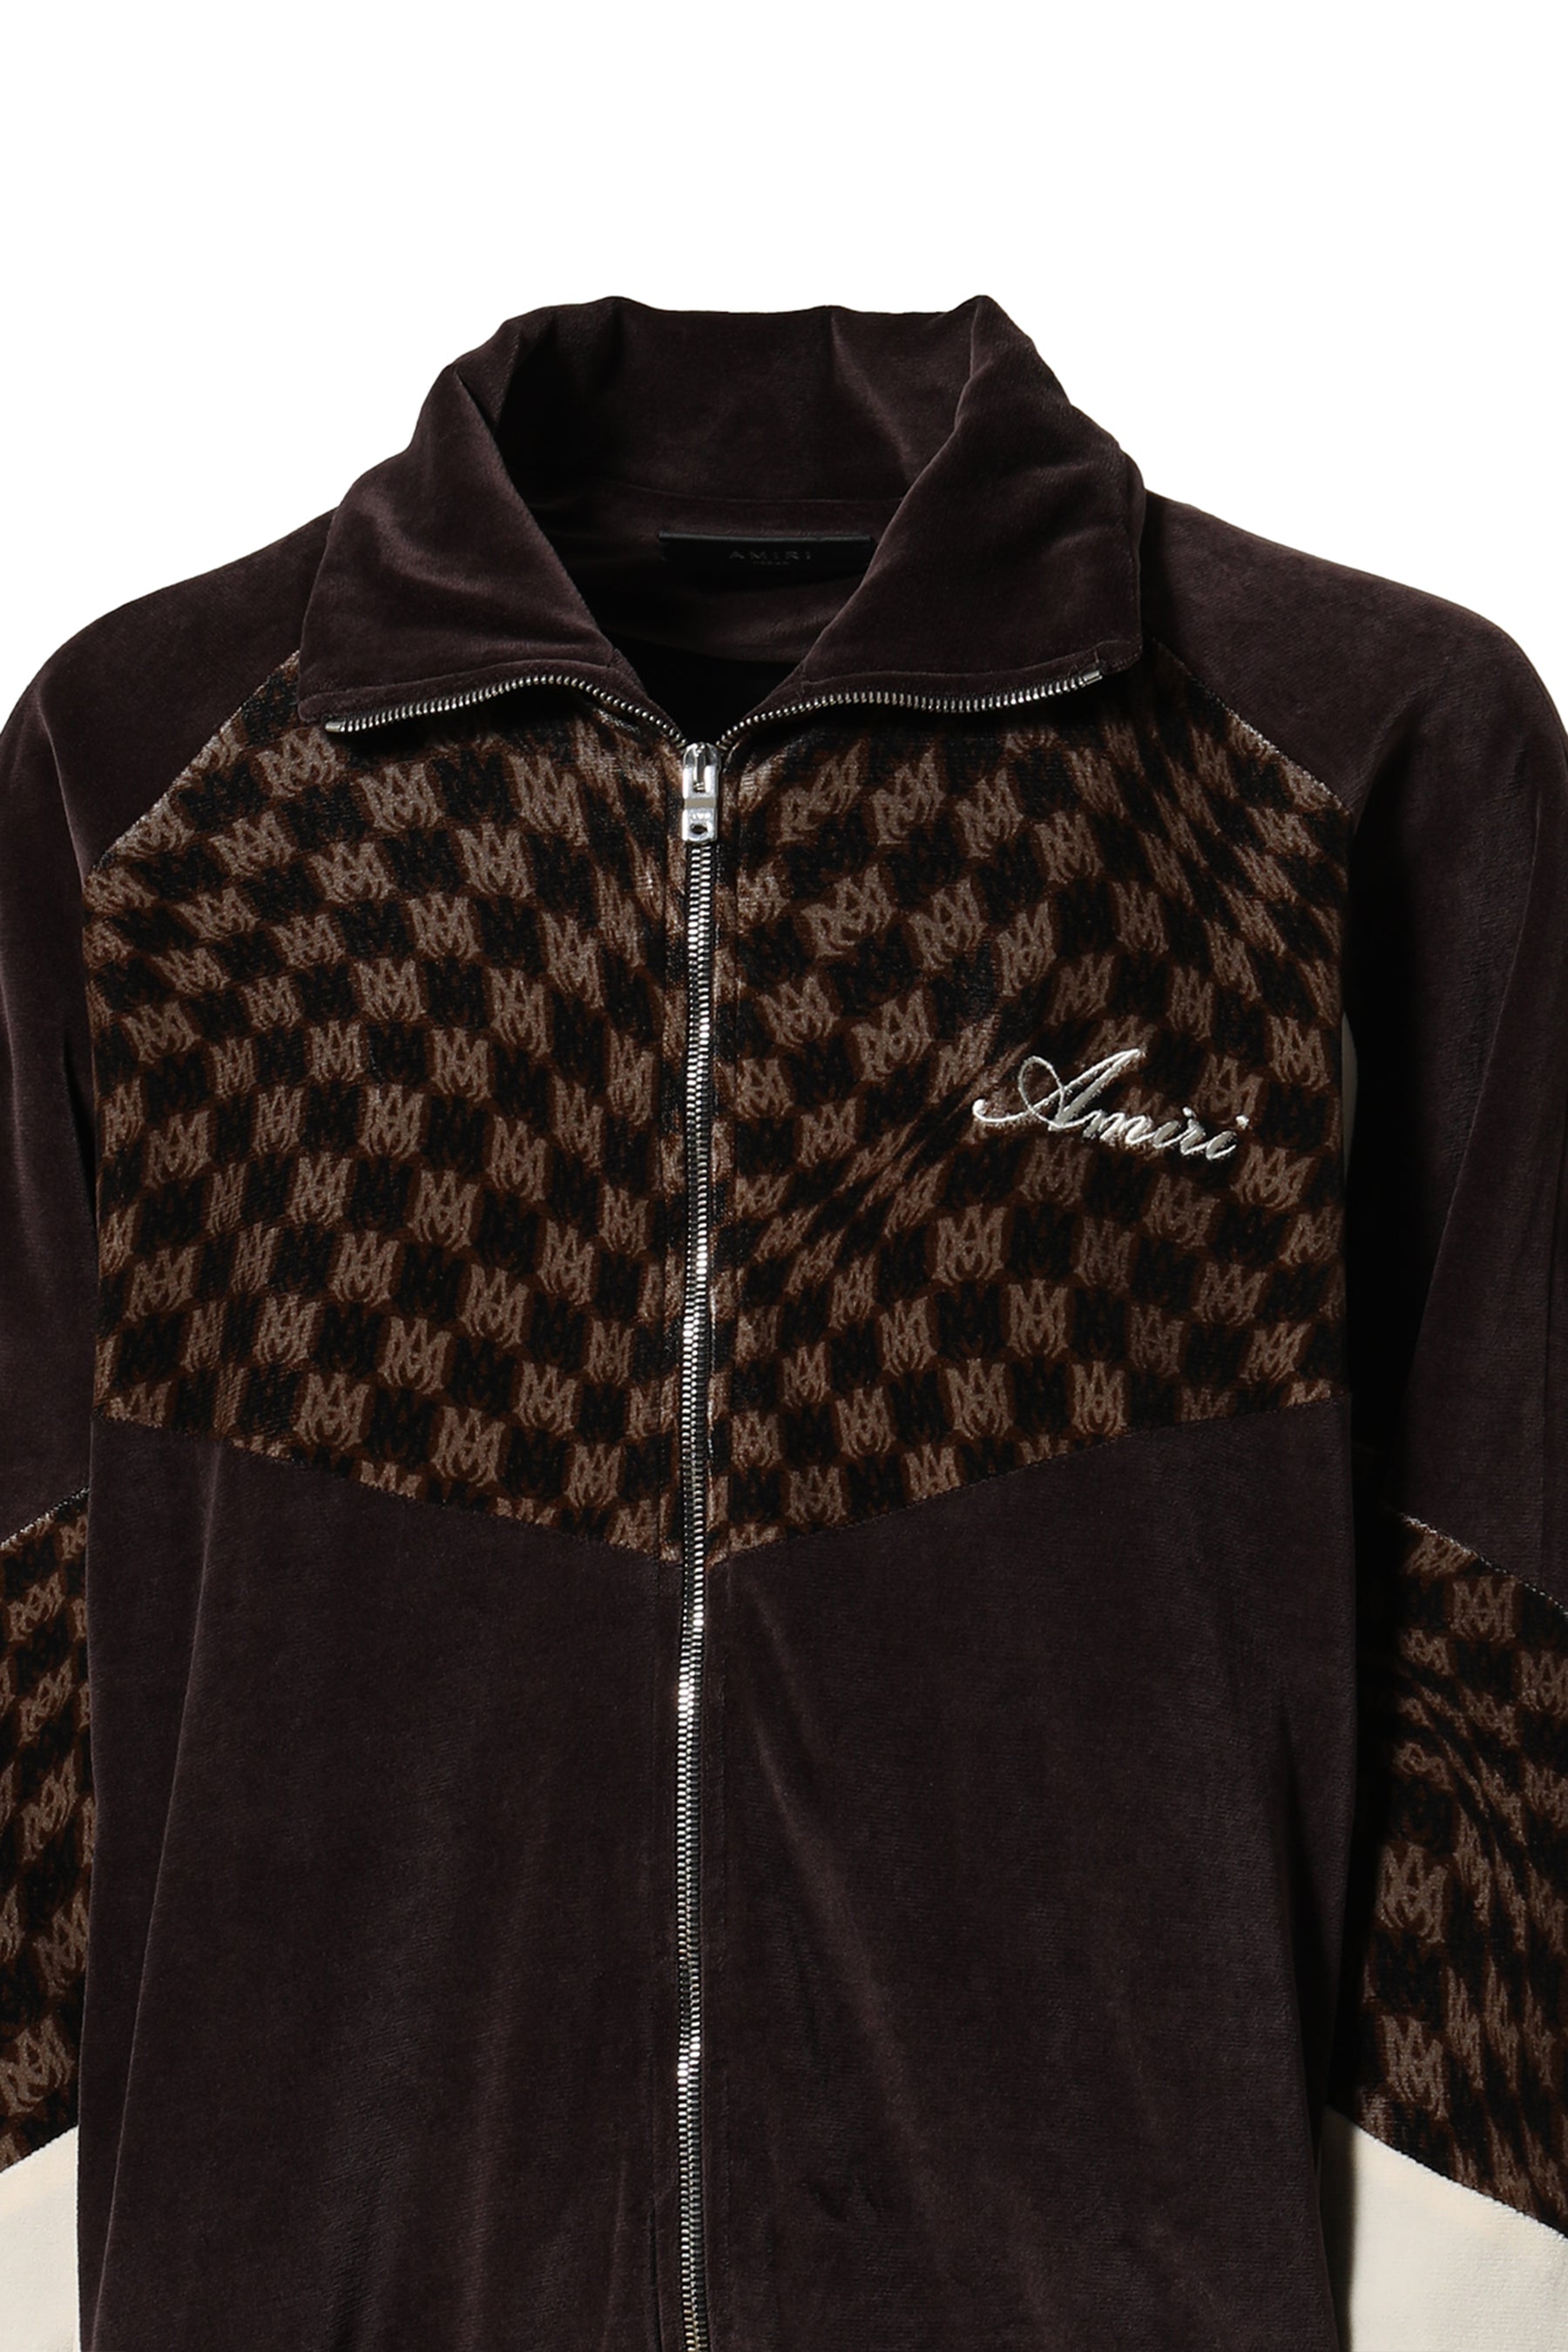 Louis Vuitton, Jackets & Coats, Louis Vuitton Velour Monogram Track Jacket  Size S